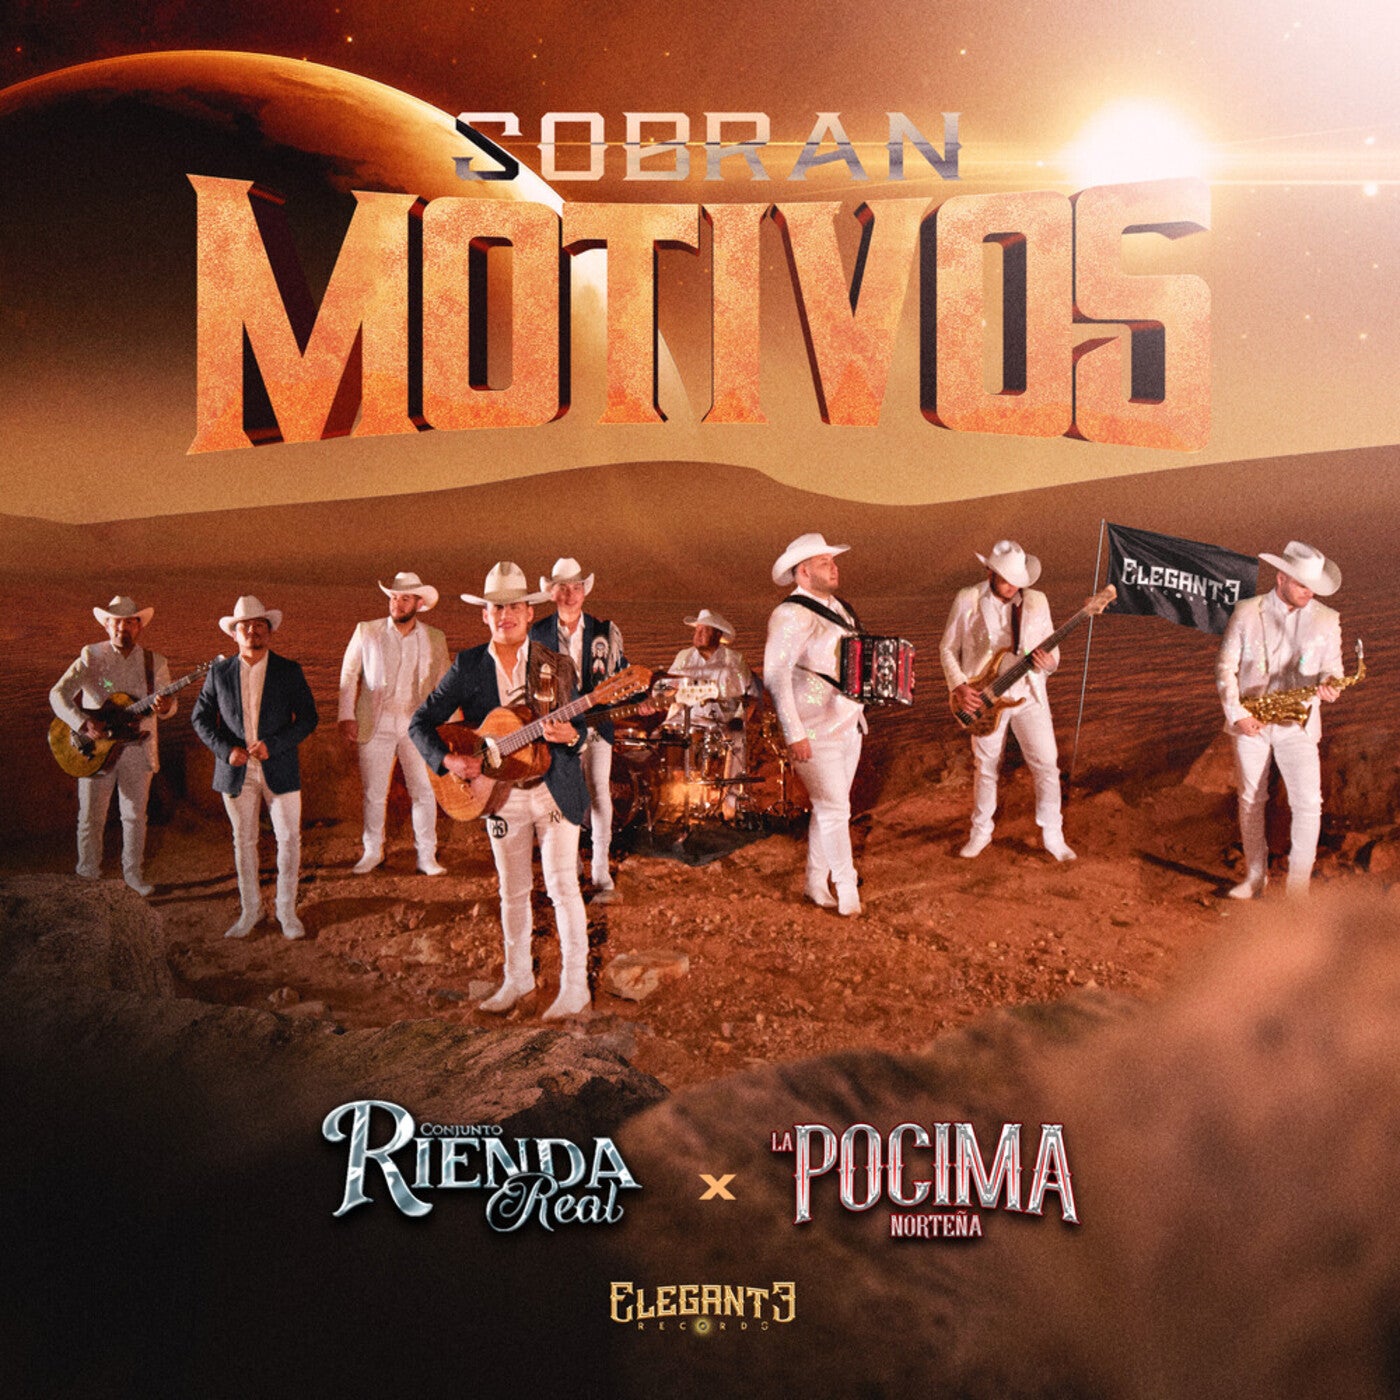 Sobran Motivos by Conjunto Rienda Real and La Pocima Norteña on Beatsource